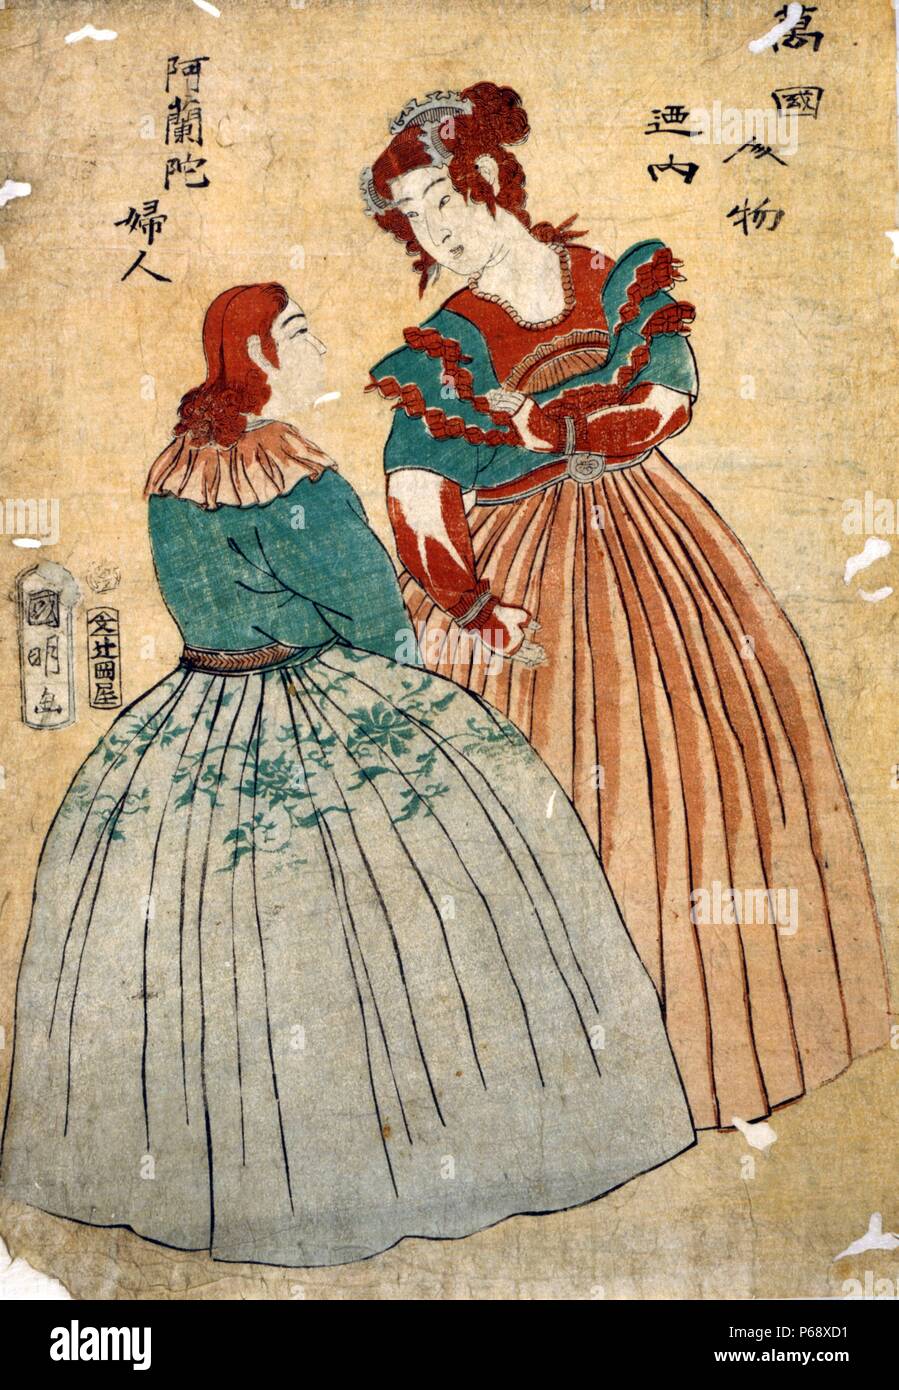 Japanische Seite farbige Holzschnitt. Bild zeigt zwei japanische Frauengestalten im westlichen Kleider, evtl. Niederländisch entwickelt. Datierte 1861 Stockfoto